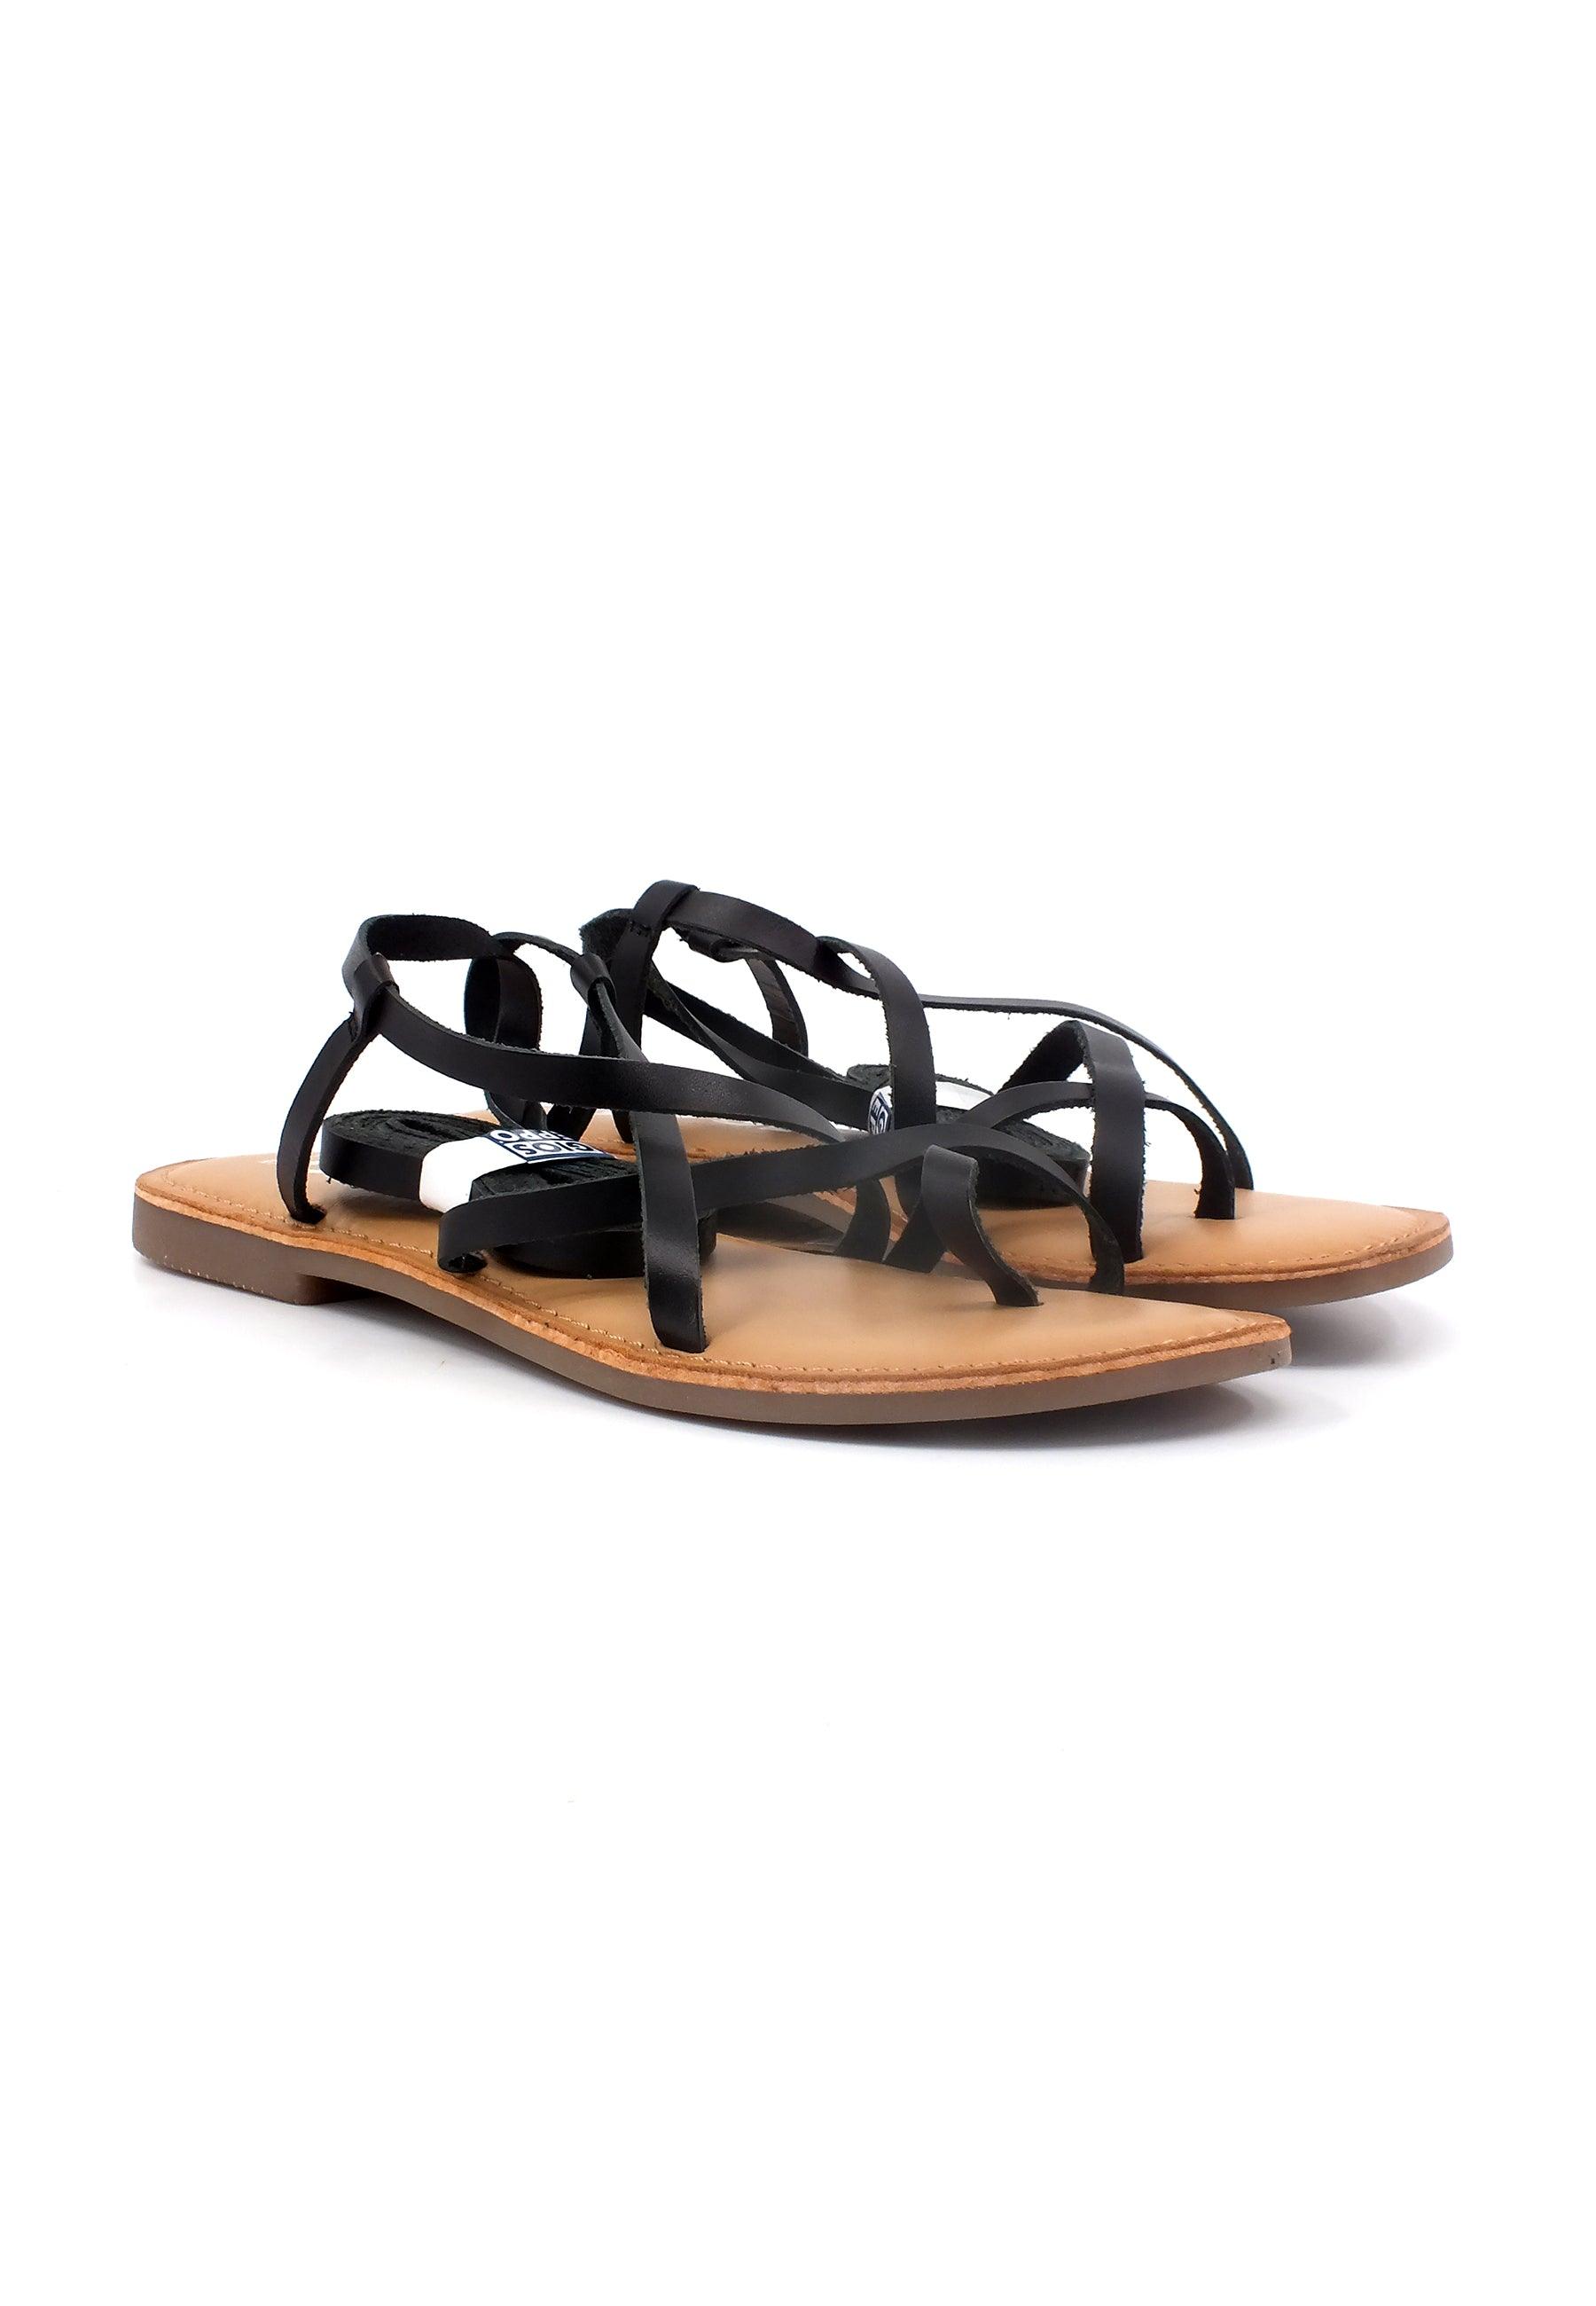 GIOSEPPO Lussat Sandalo Gladiator Donna Black 69115 - Sandrini Calzature e Abbigliamento